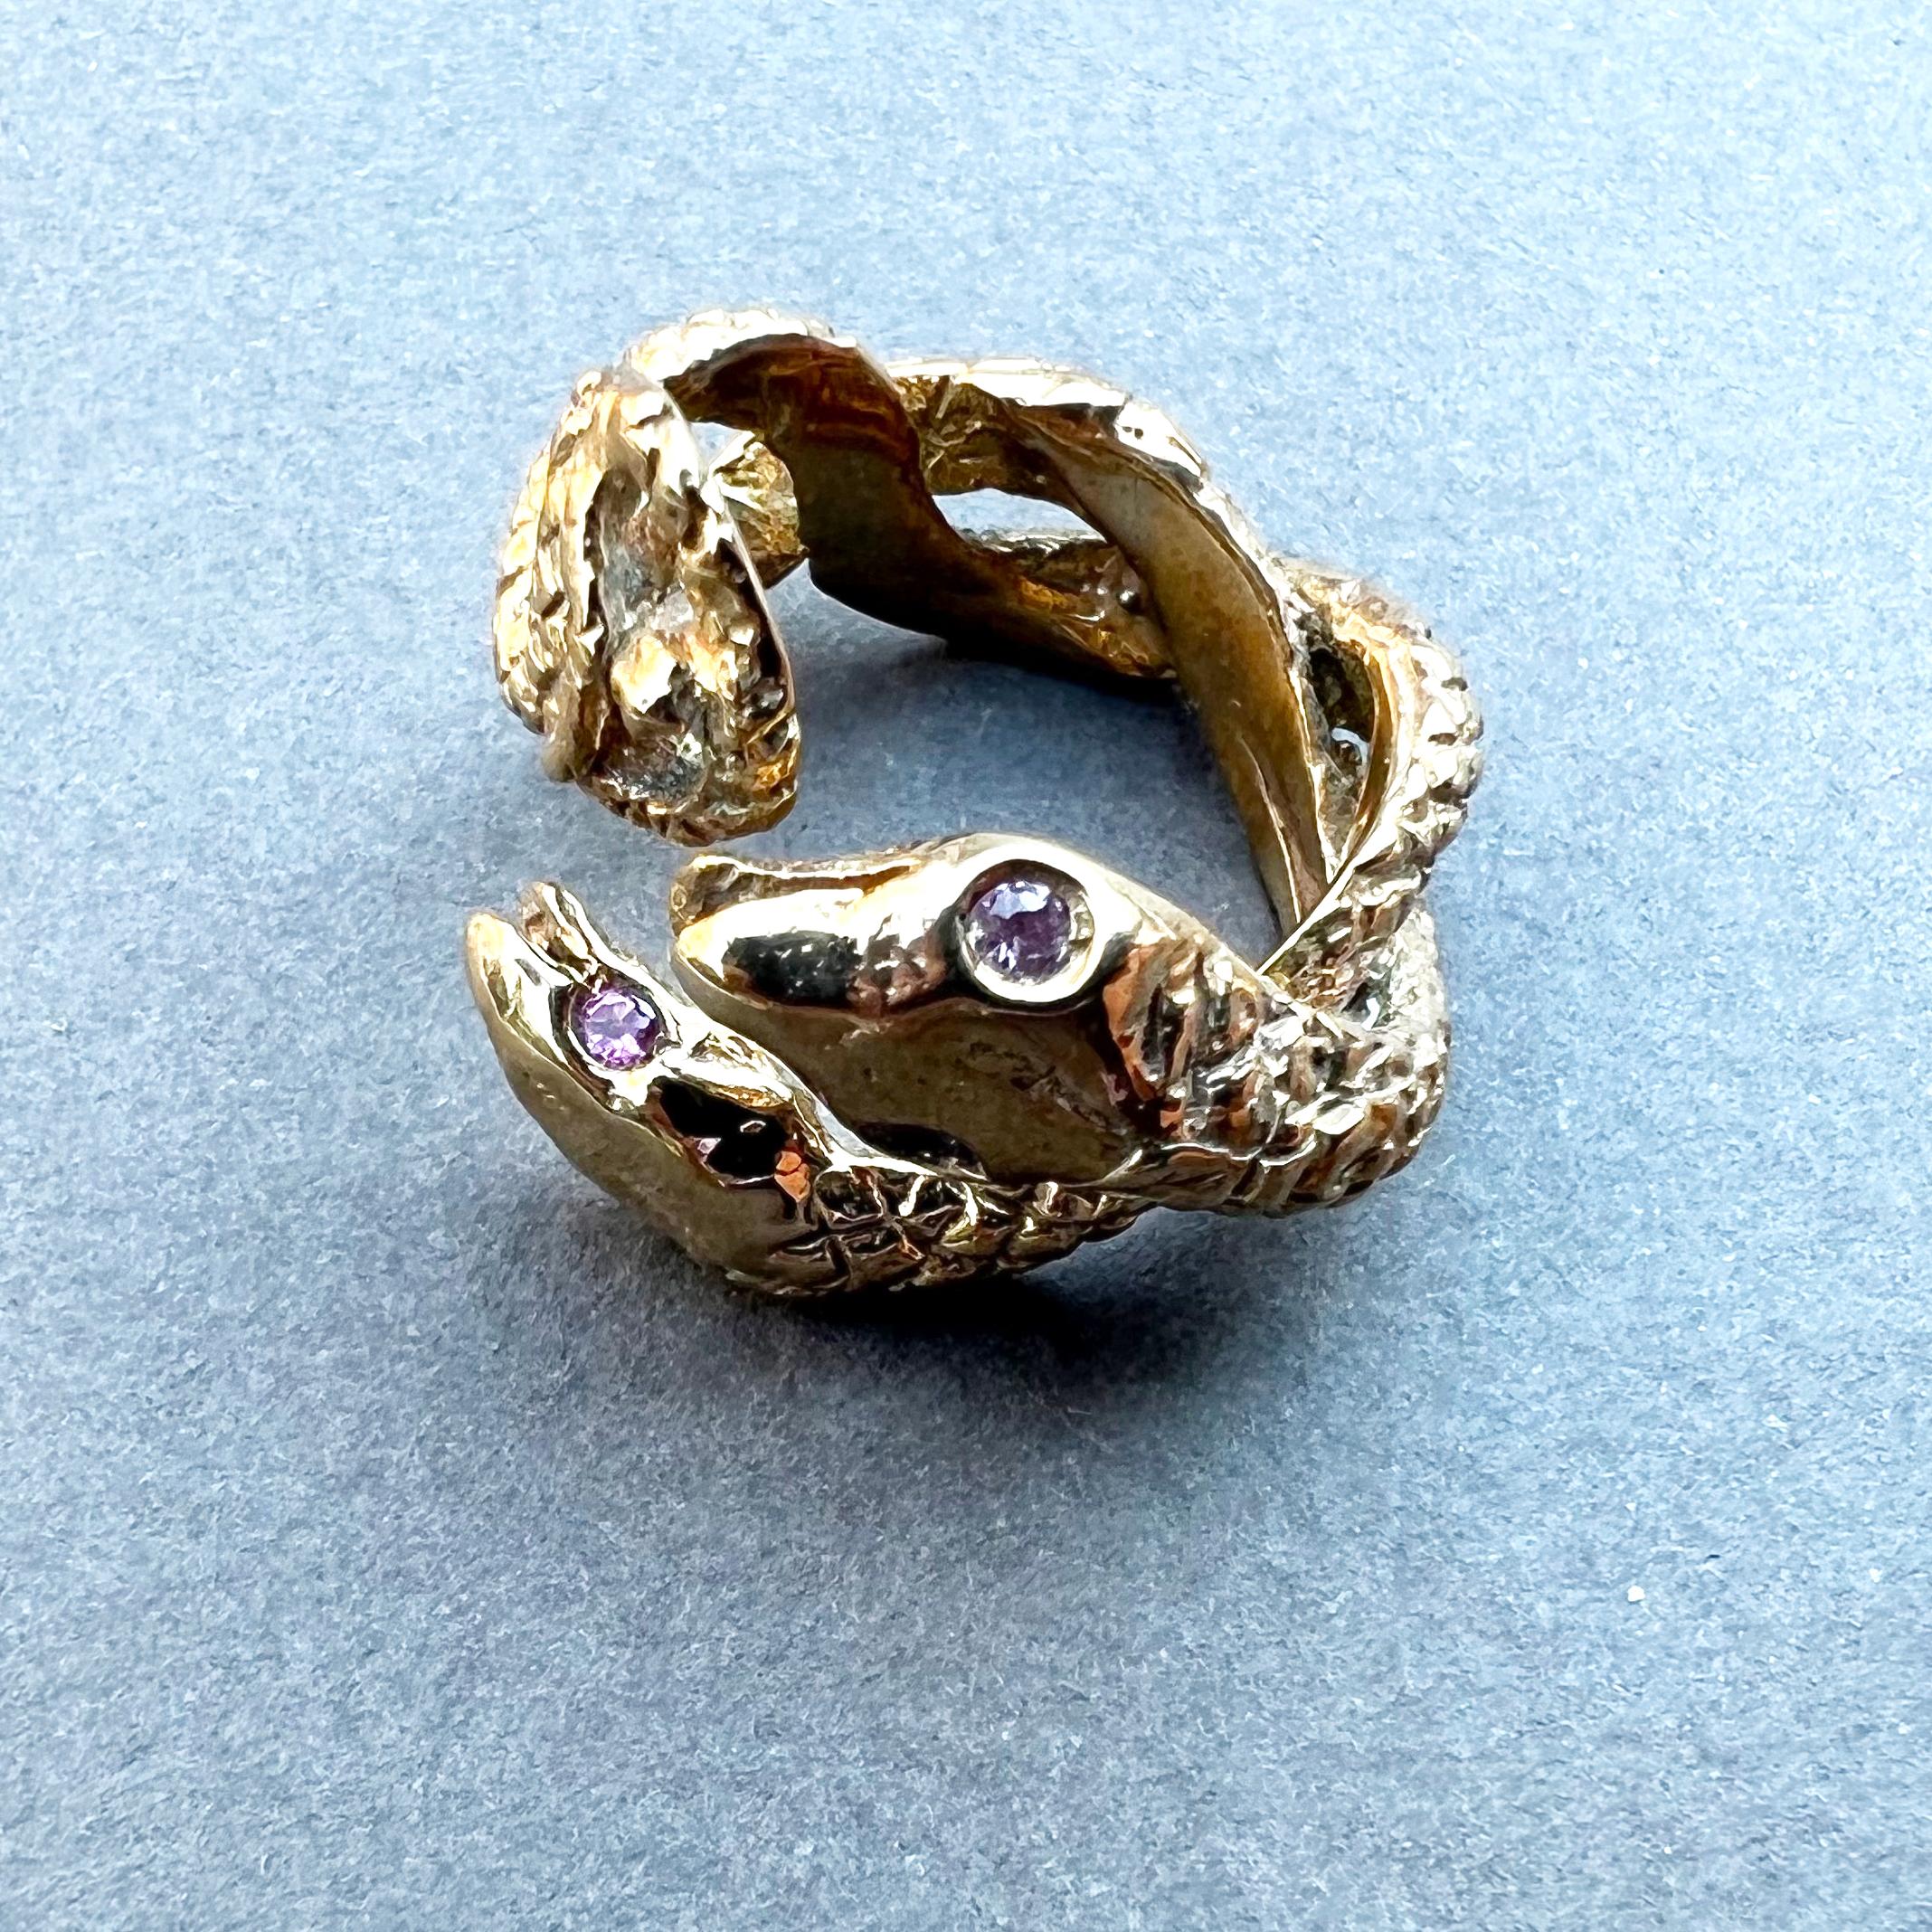 4 Stück Rosa Saphir Schlange Ring Bronze  
Von J. Dauphin
Cocktail-Ring

Dieser Ring ist verstellbar - passend für Größe 6-8

J DAUPHIN 